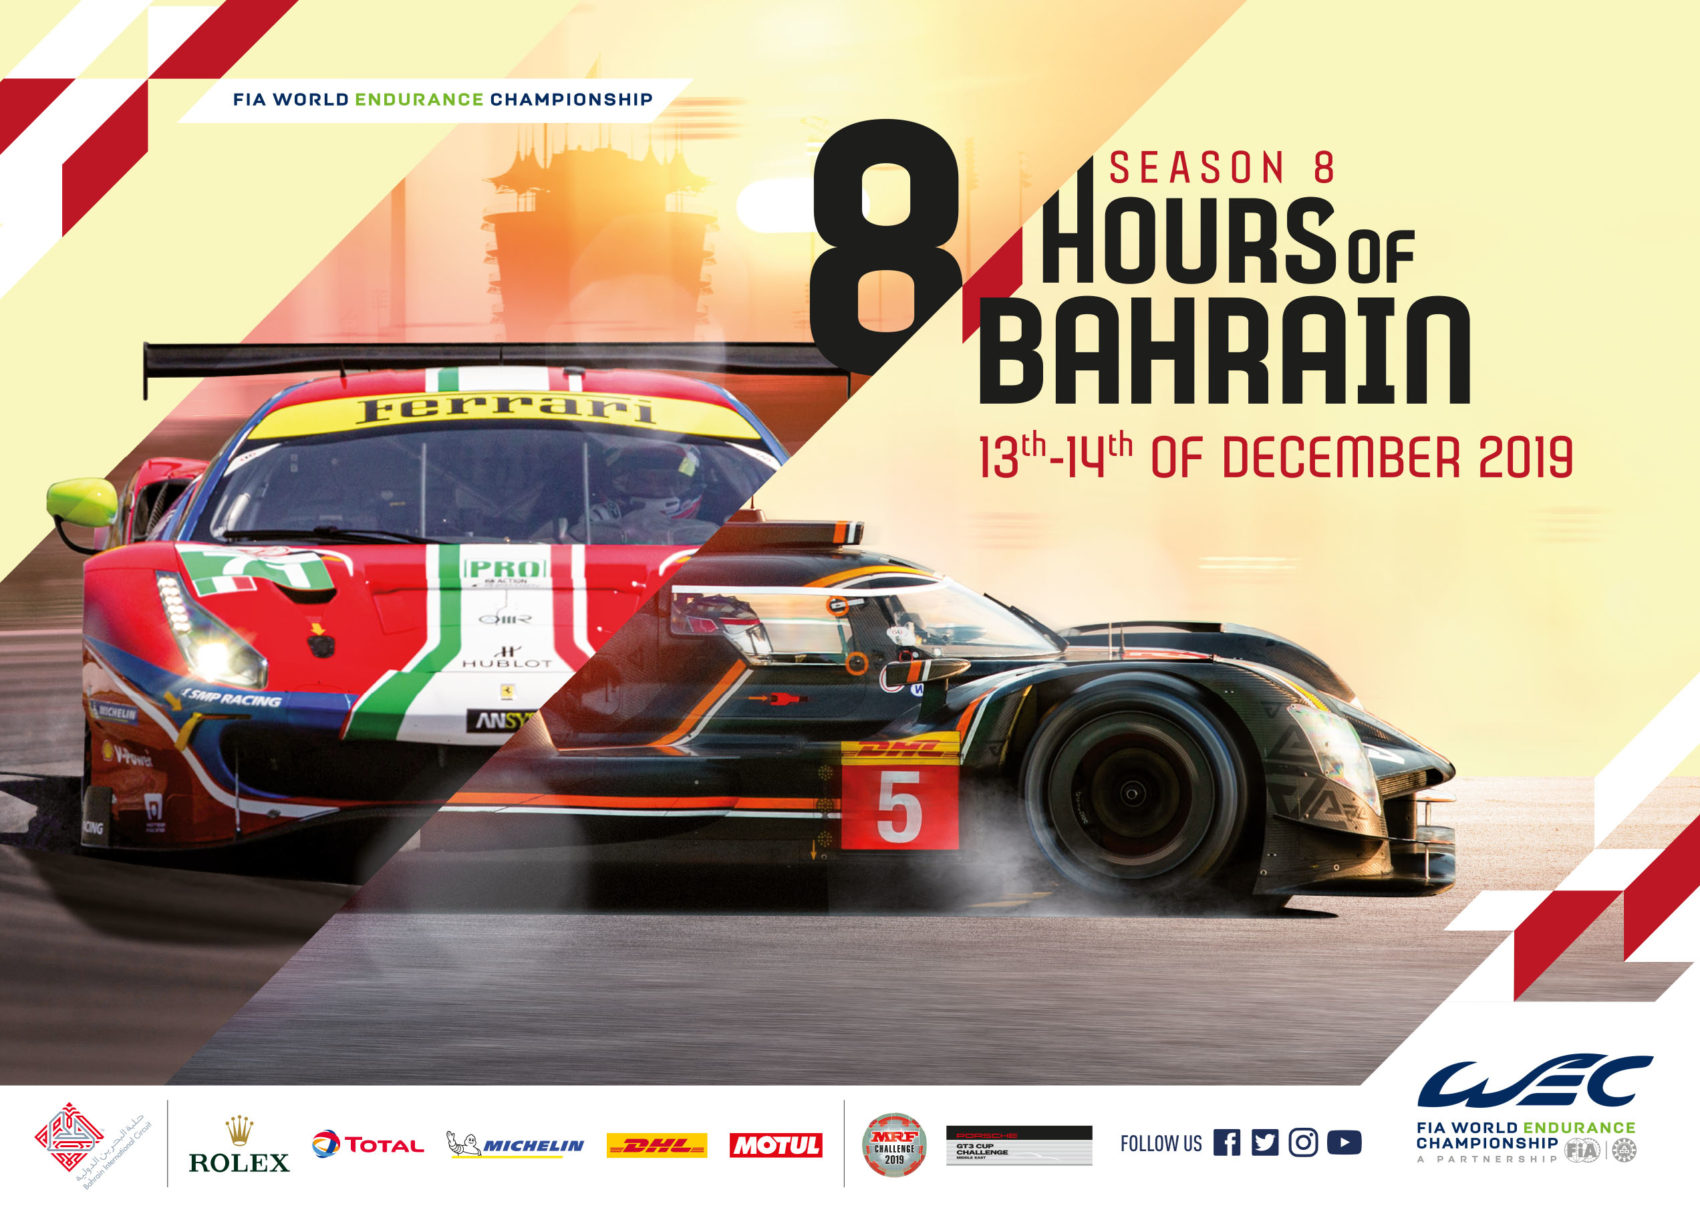 Projet_Project_WEC_FIA_world_endurance_championship_KV_bahrain